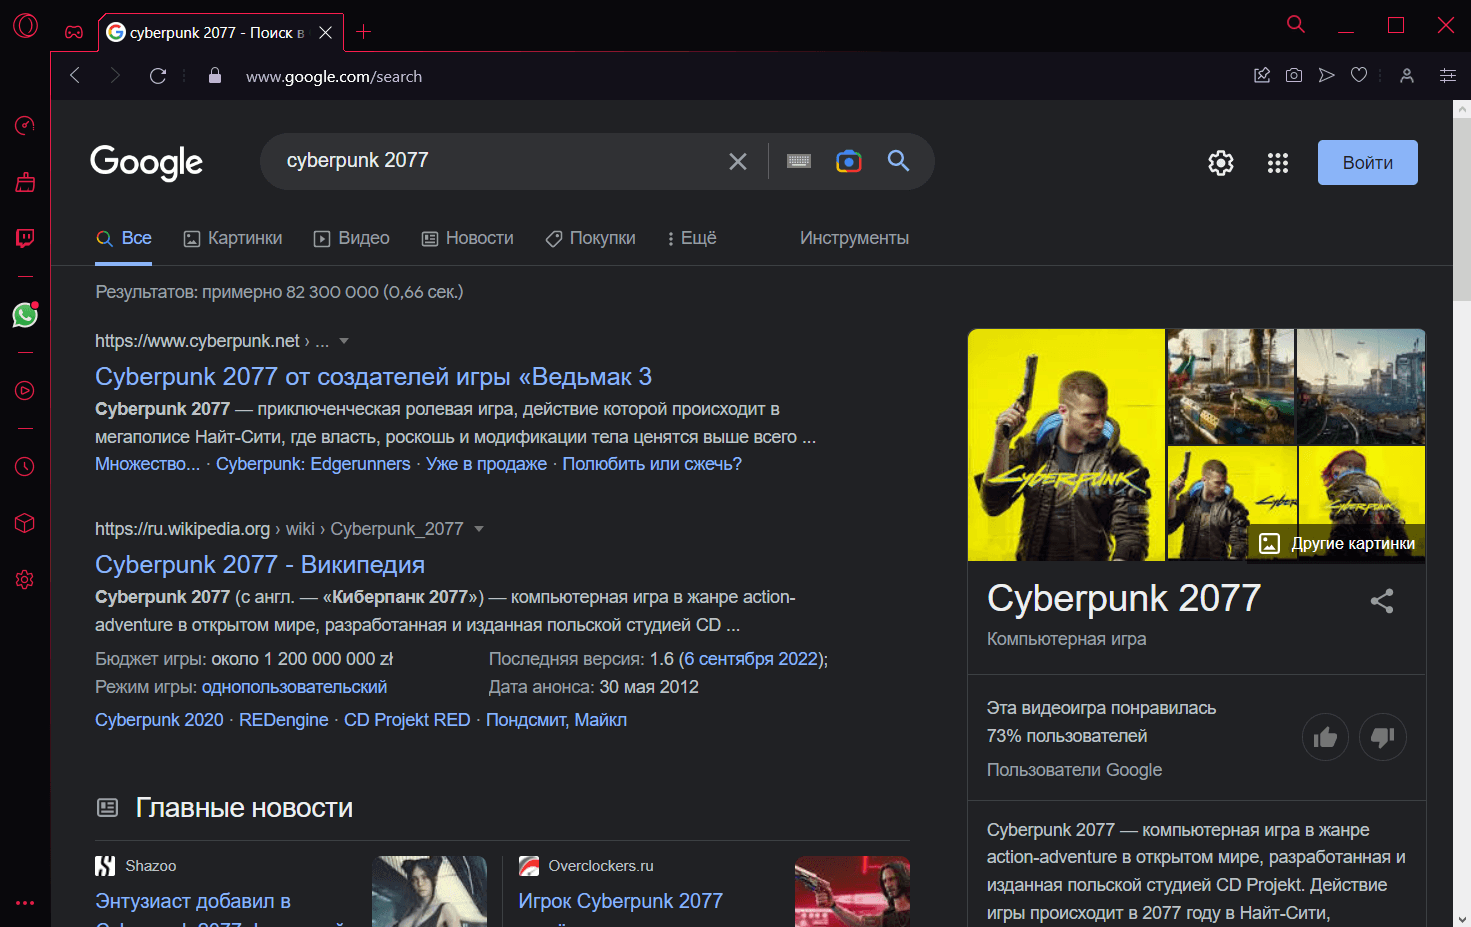 Opera GX браузер скриншот (фото)